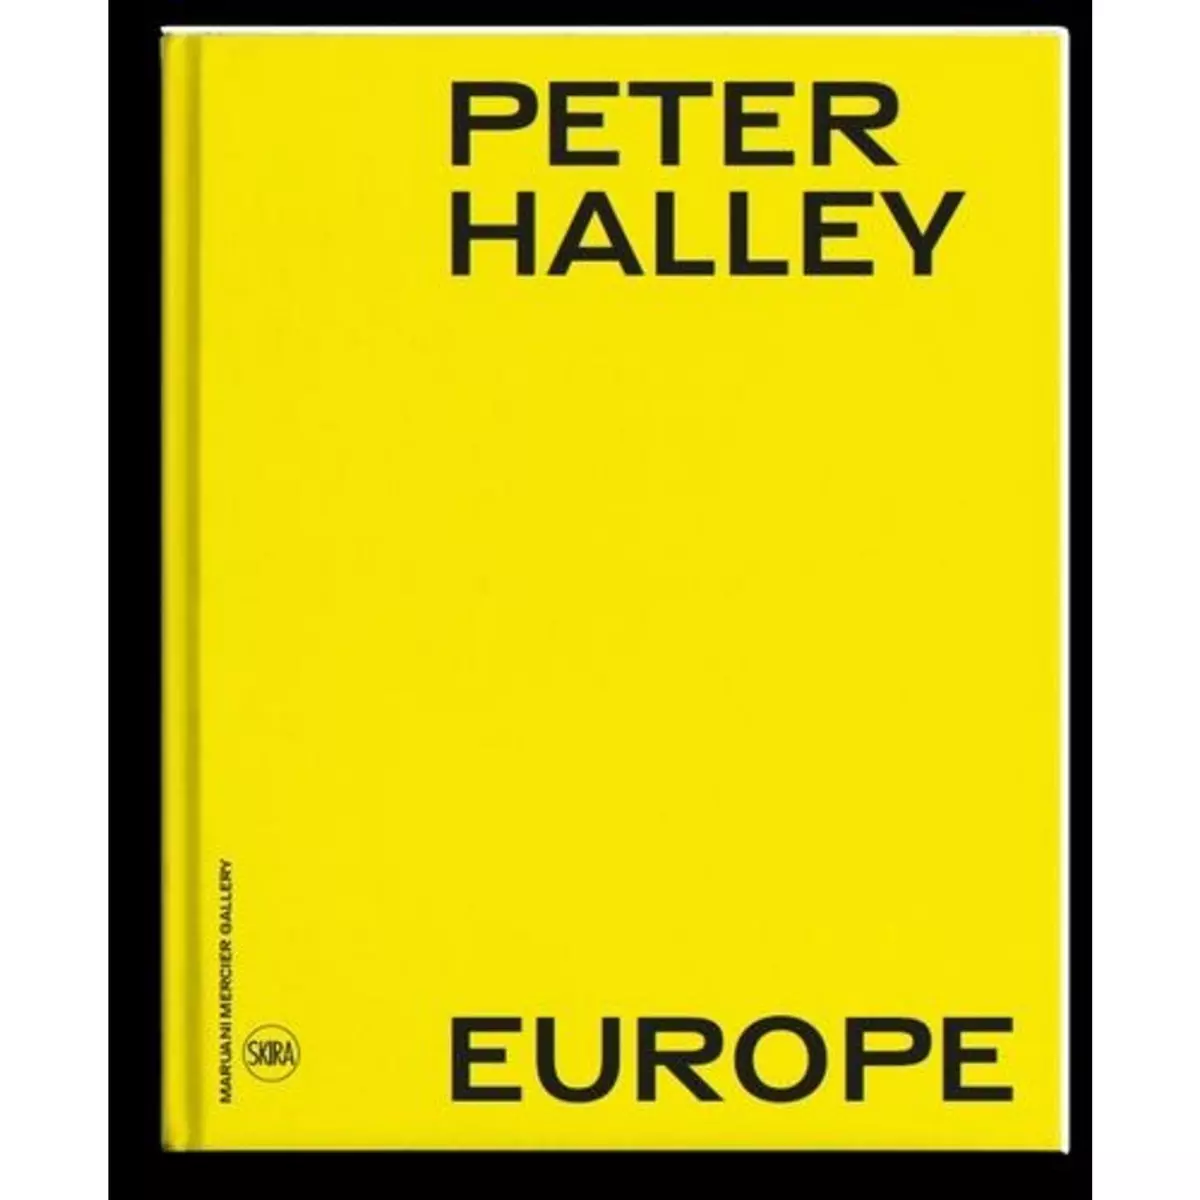  PETER HALLEY. EUROPE, EDITION BILINGUE FRANCAIS-ANGLAIS, Orgeval Domitille d'